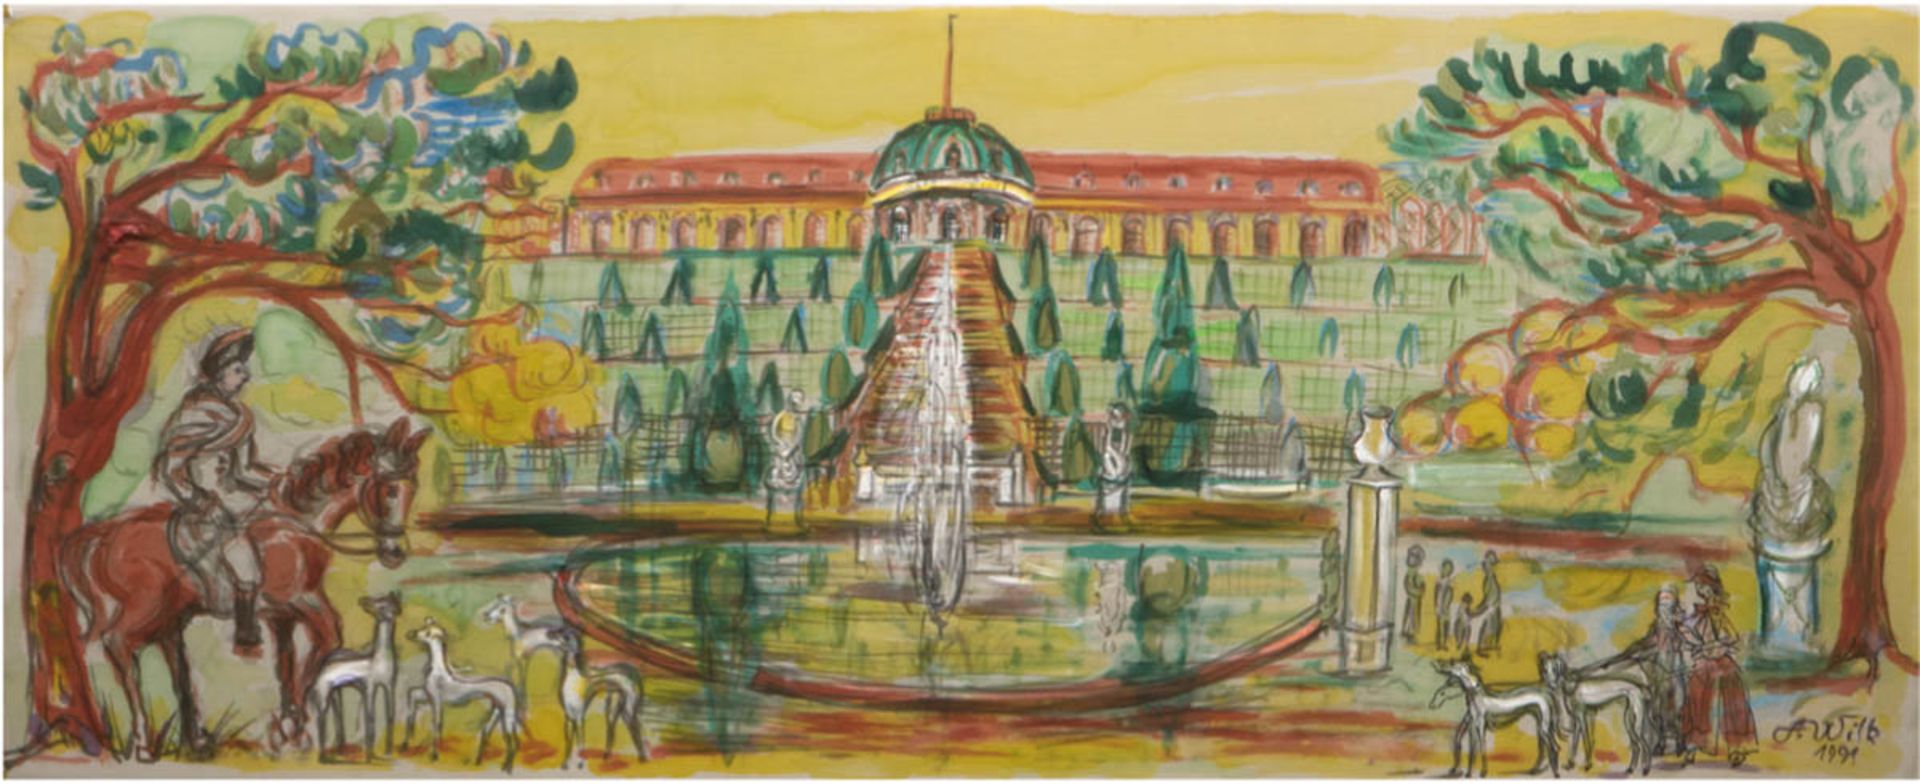 Lemke-Wilk, Anneliese (1921 Blumenau/Brasilien) "Sanssouci", Seidenmalerei, signiert unddatiert 1991